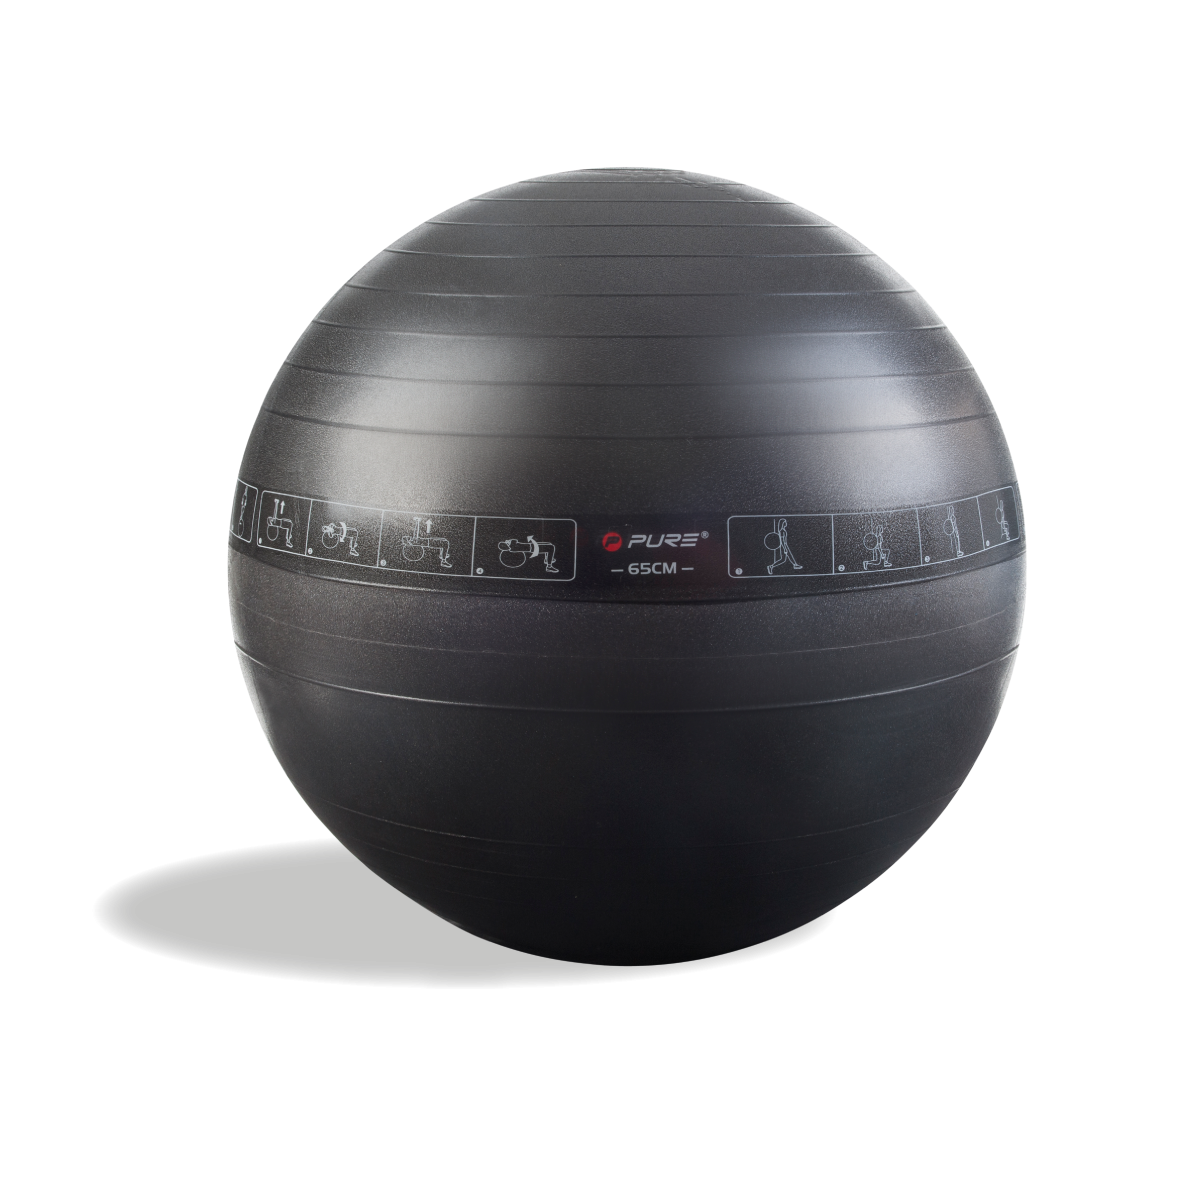 Black Gym Ball PNG HD Quality